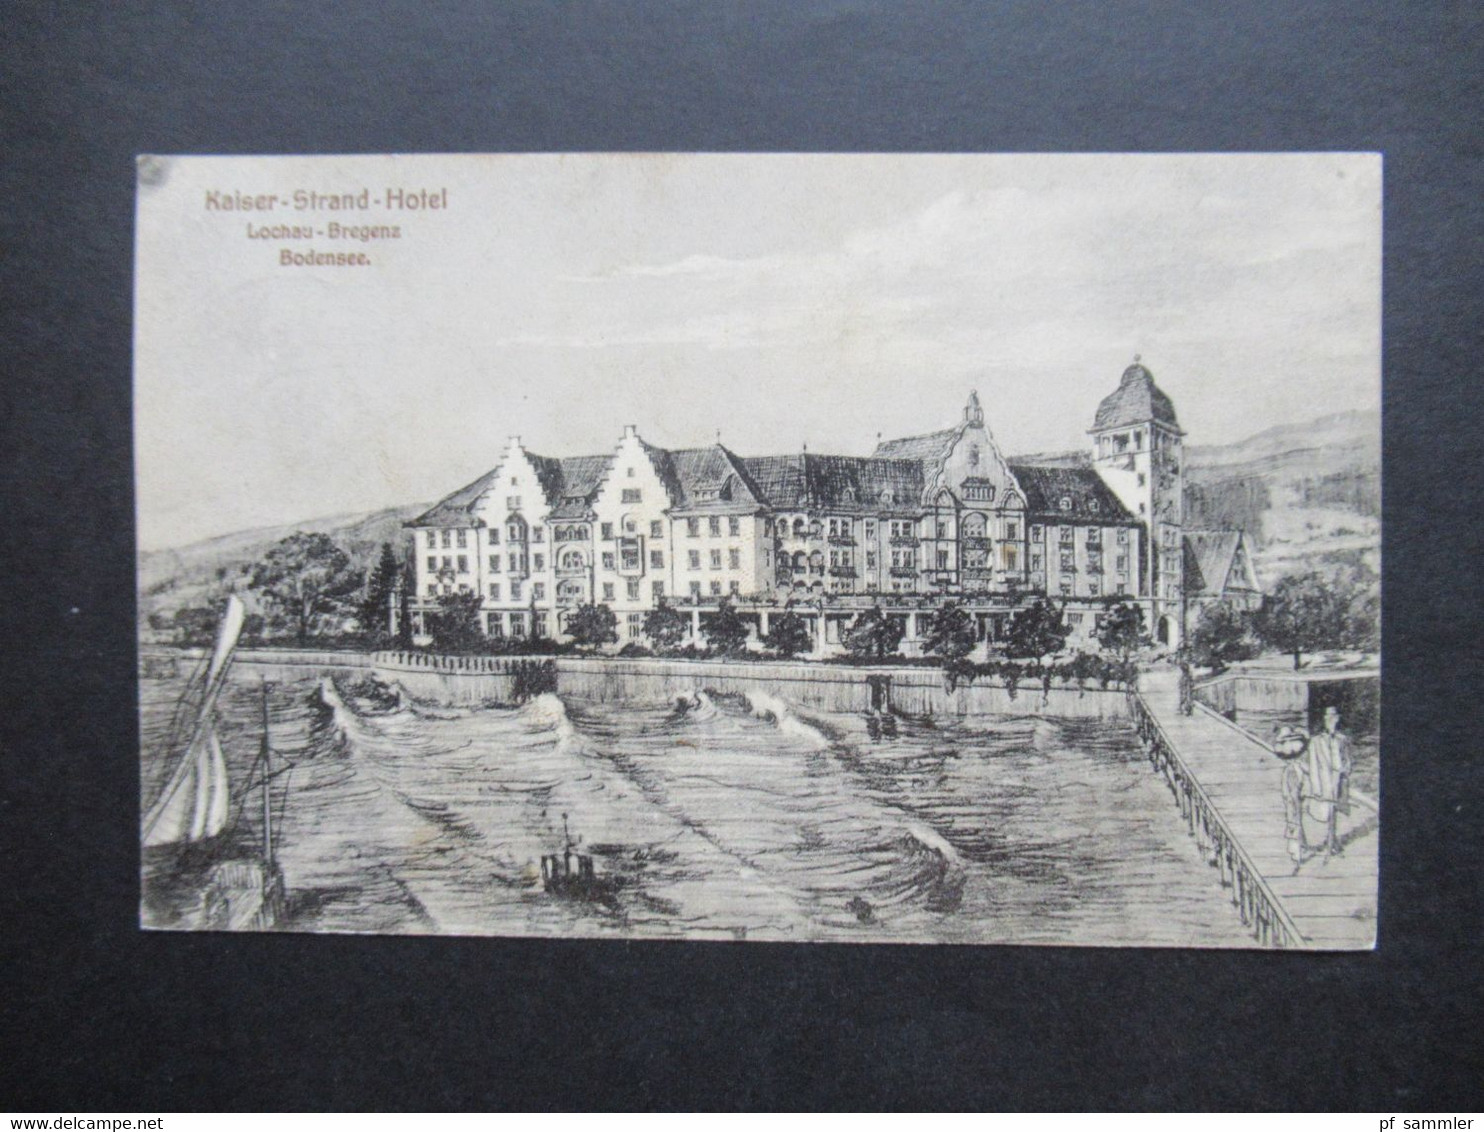 Österreich 1909 AK Kaiser Strand Hotel In Lochau Bregenz Am Bodensee. Strandhotel Mit Promenade - Hotels & Restaurants